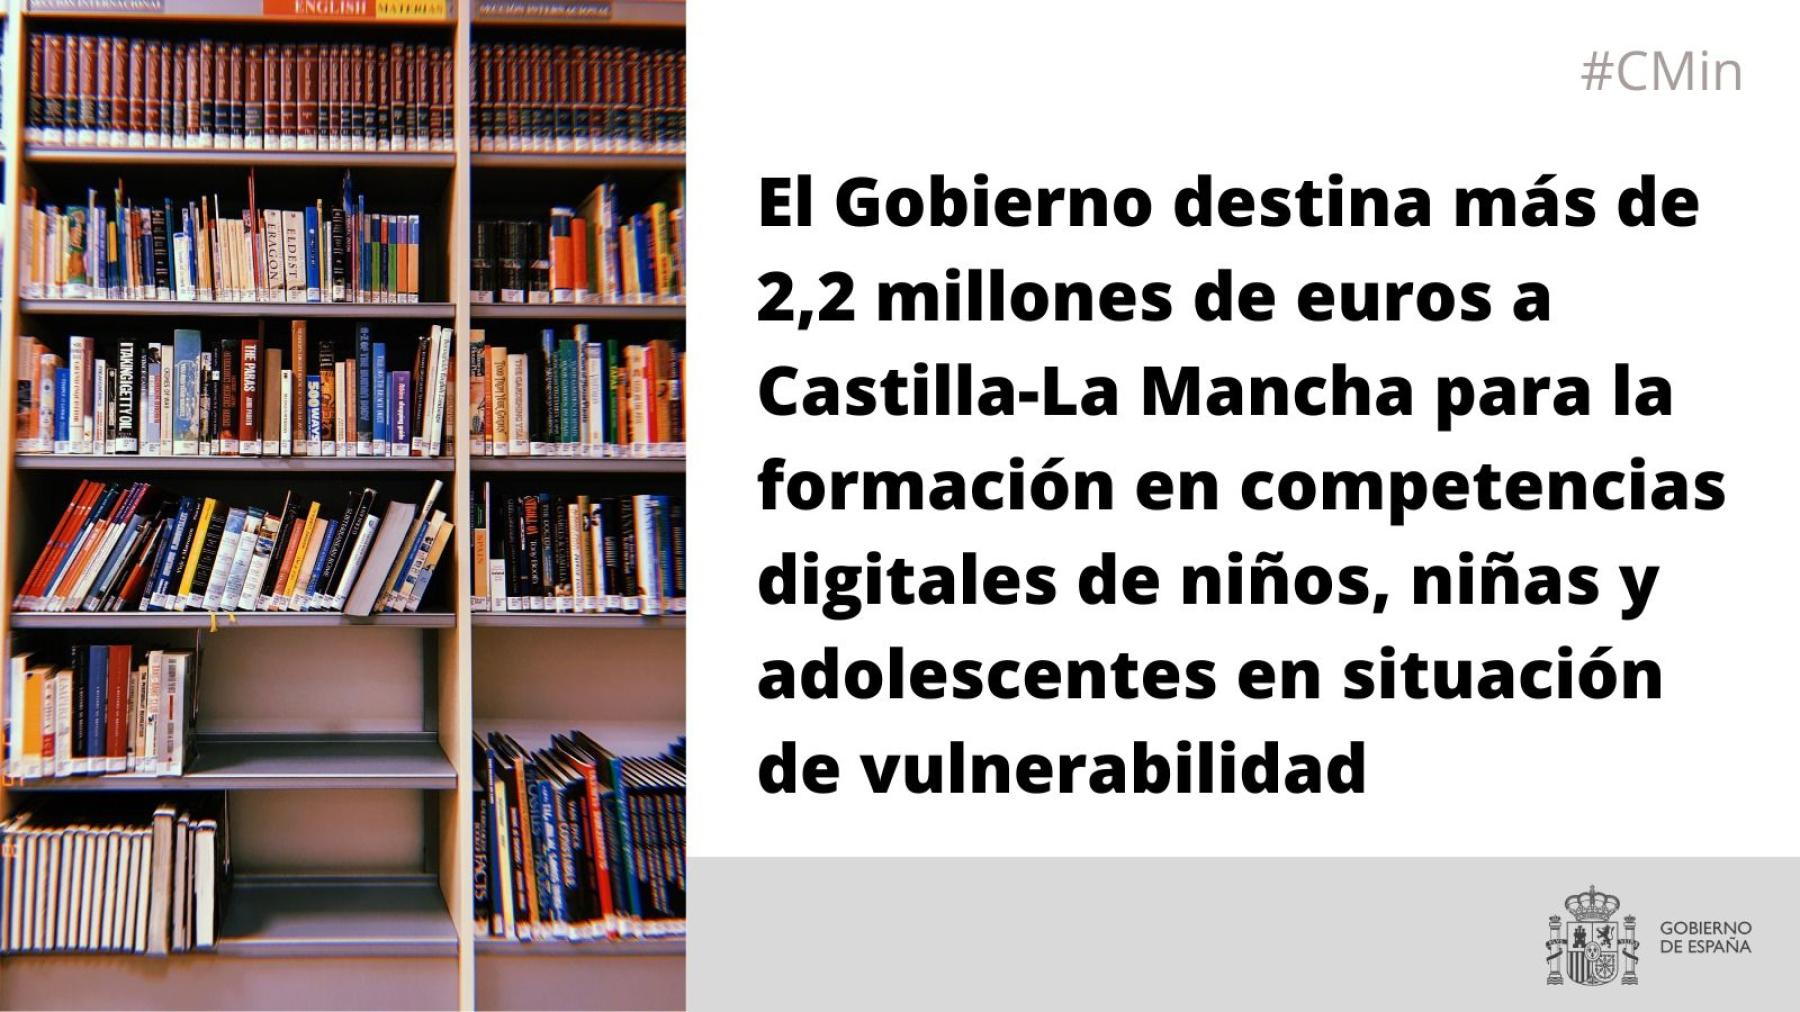 El Gobierno destina más de 2,2 millones de euros a Castilla-La Mancha para la formación en competencias digitales de niños, niñas y adolescentes en situación de vulnerabilidad